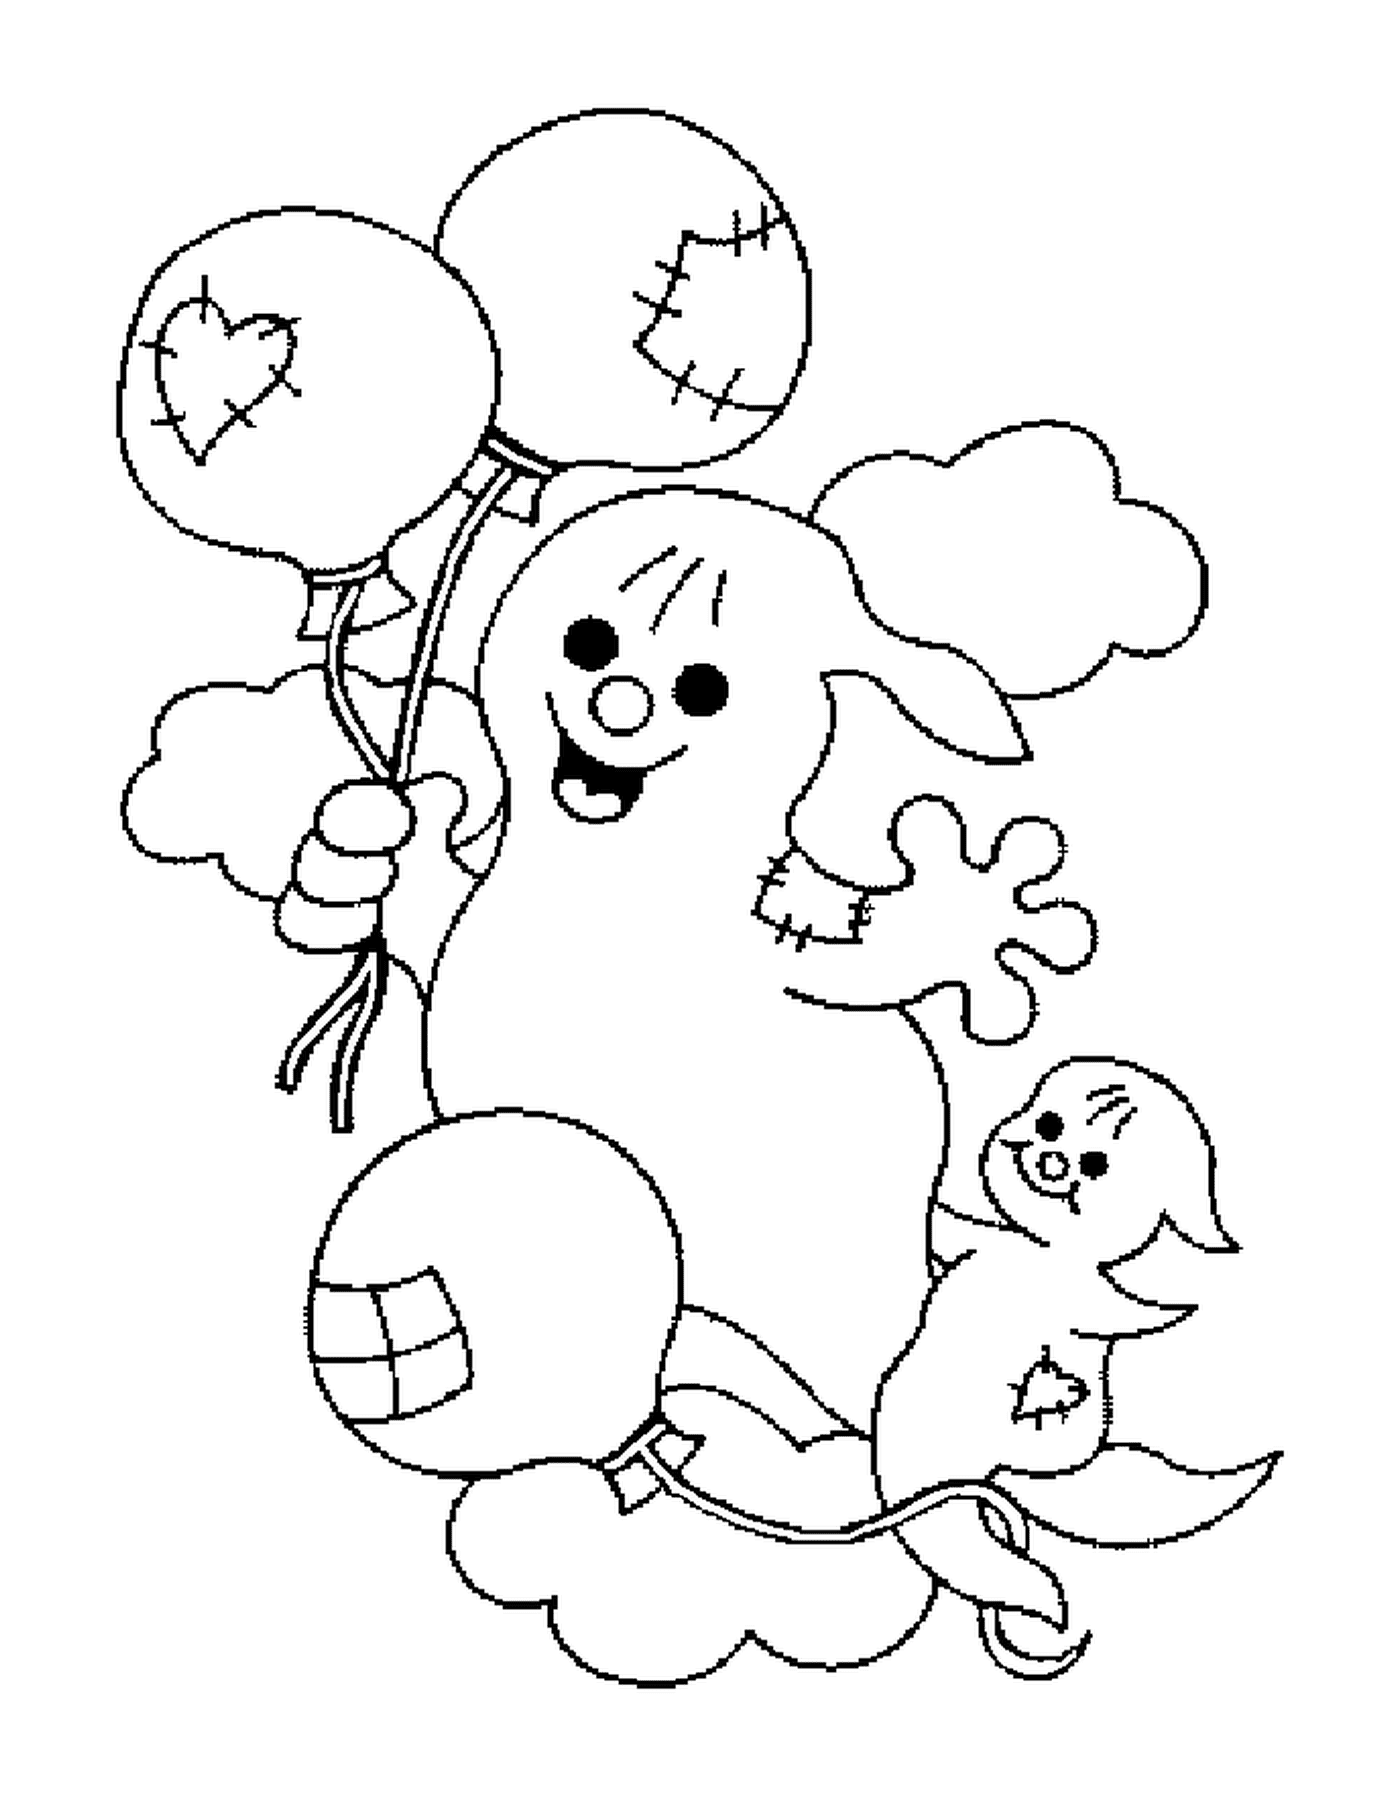  Dois fantasmas nas nuvens com balões 